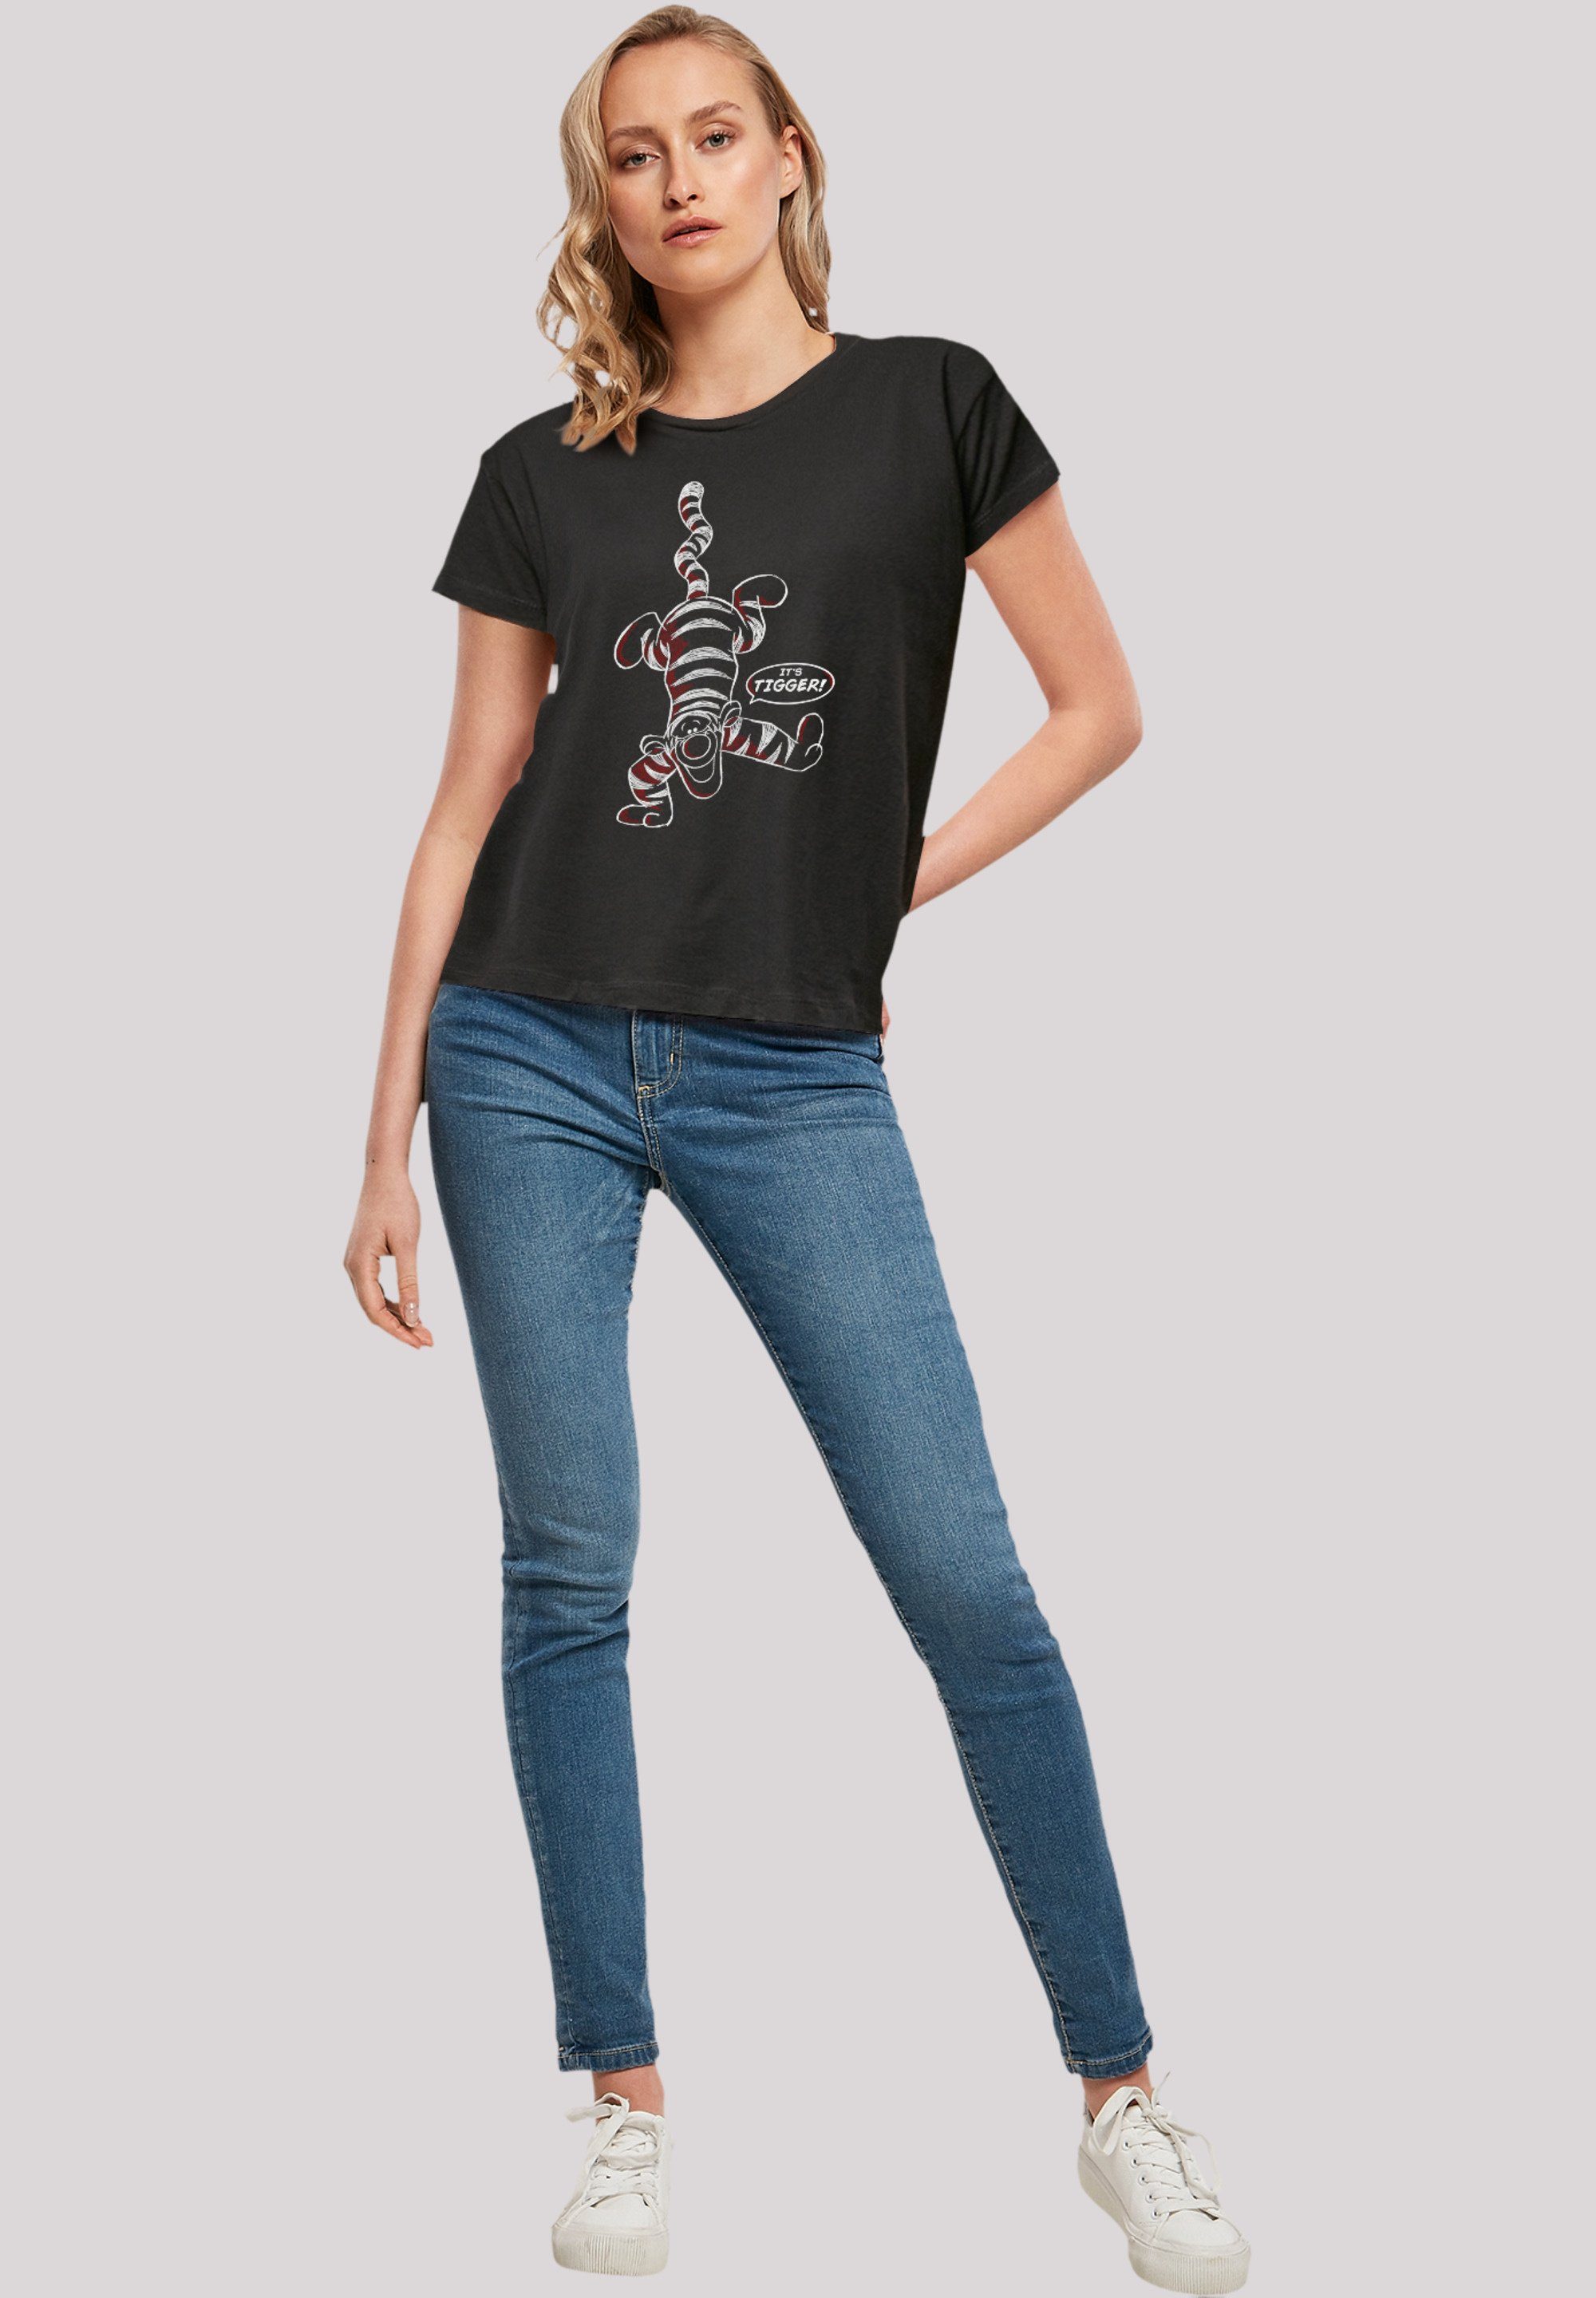 Puuh Winnie Tigger T-Shirt Qualität F4NT4STIC It’s Disney Premium